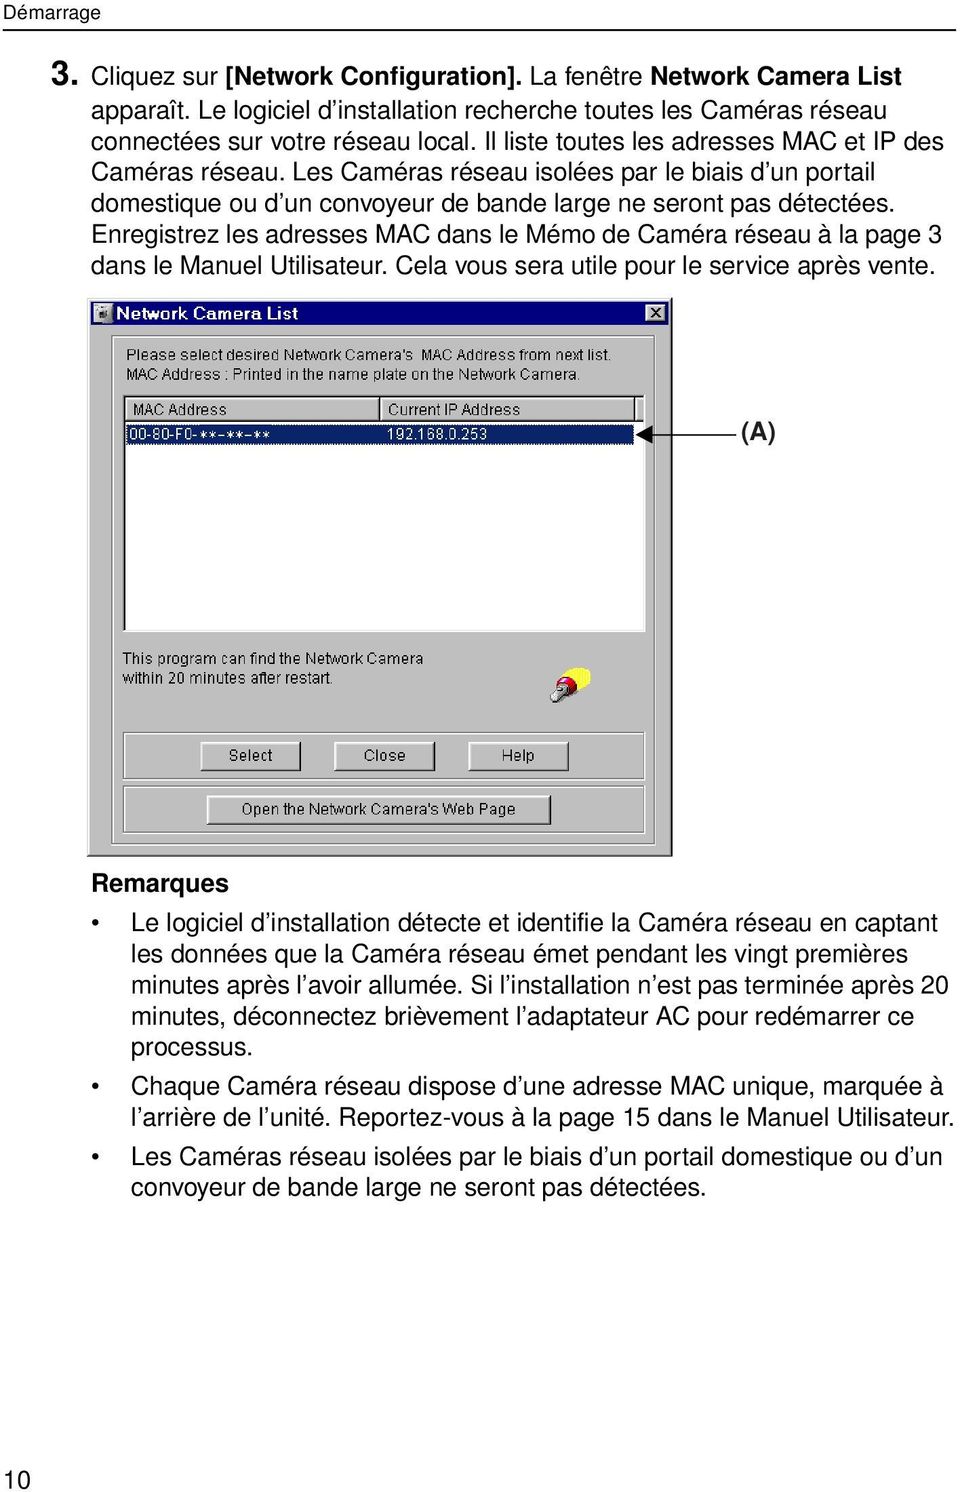 Enregistrez les adresses MAC dans le Mémo de Caméra réseau à la page 3 dans le Manuel Utilisateur. Cela vous sera utile pour le service après vente.